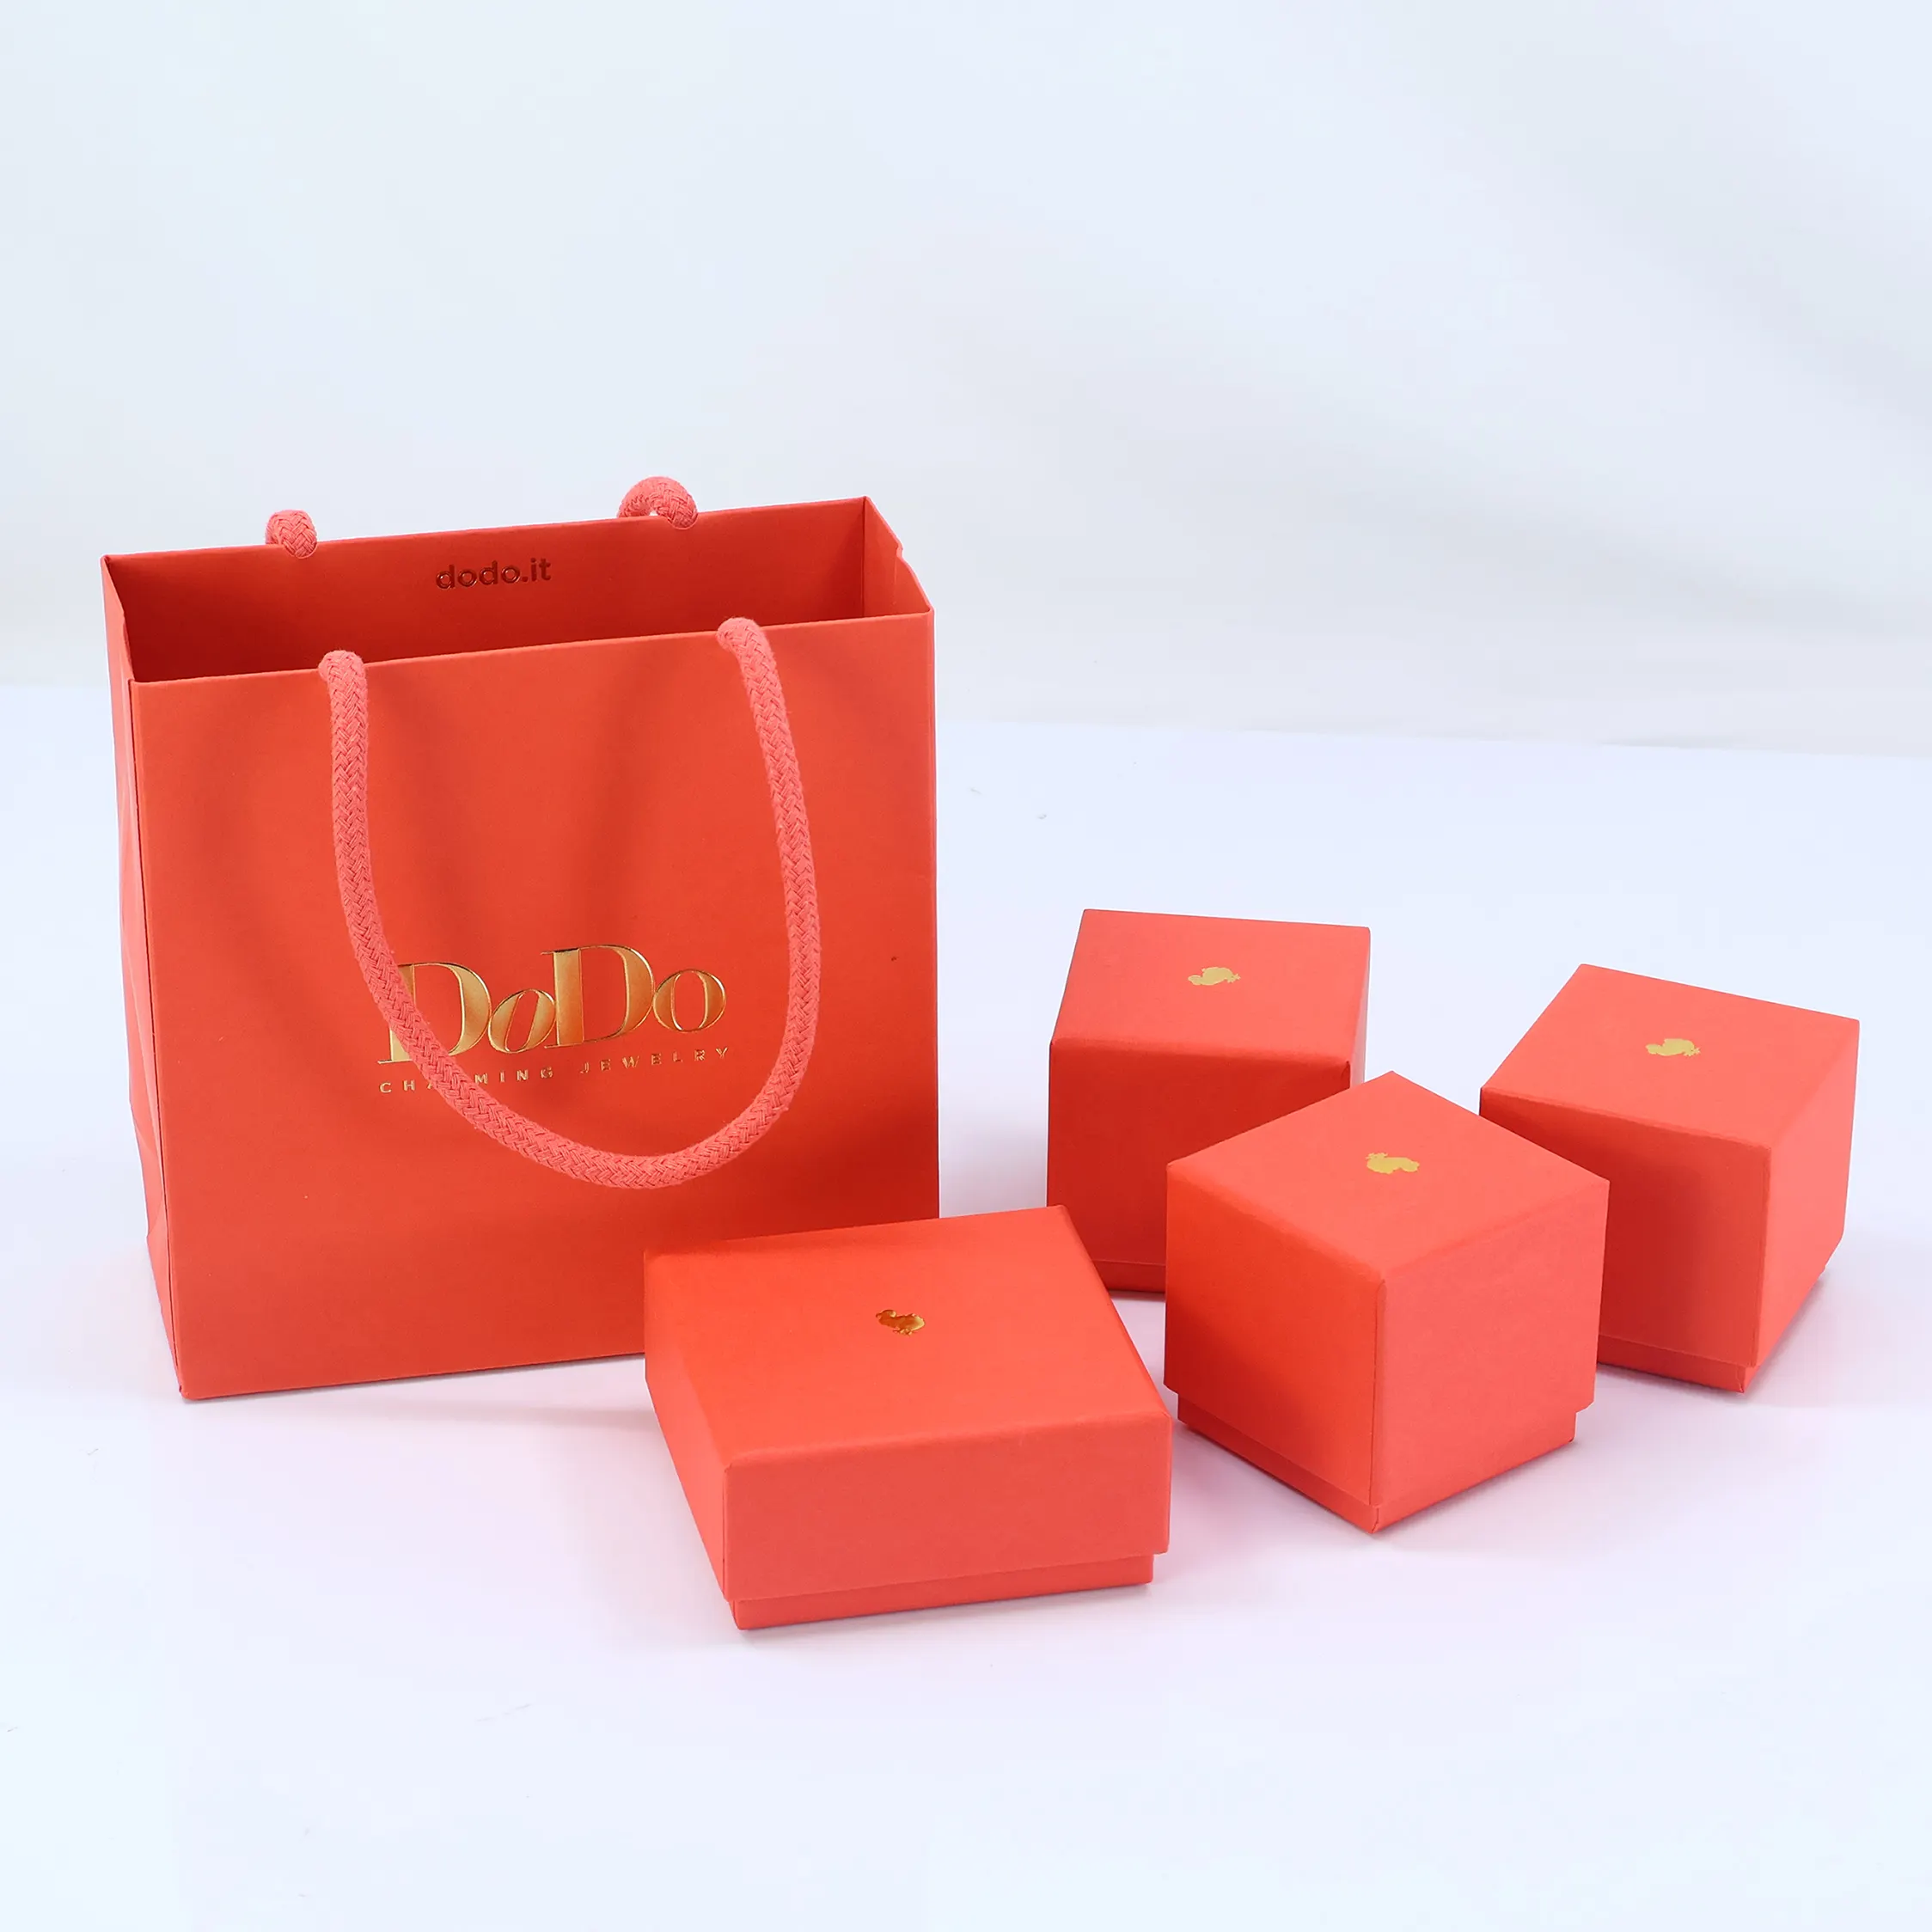 Diseño reciclable Pestañas postizas Herramientas de maquillaje para ojos perfume Juego de regalo Embalaje Impreso personalizado pequeña bolsa de papel y traje de caja de papel